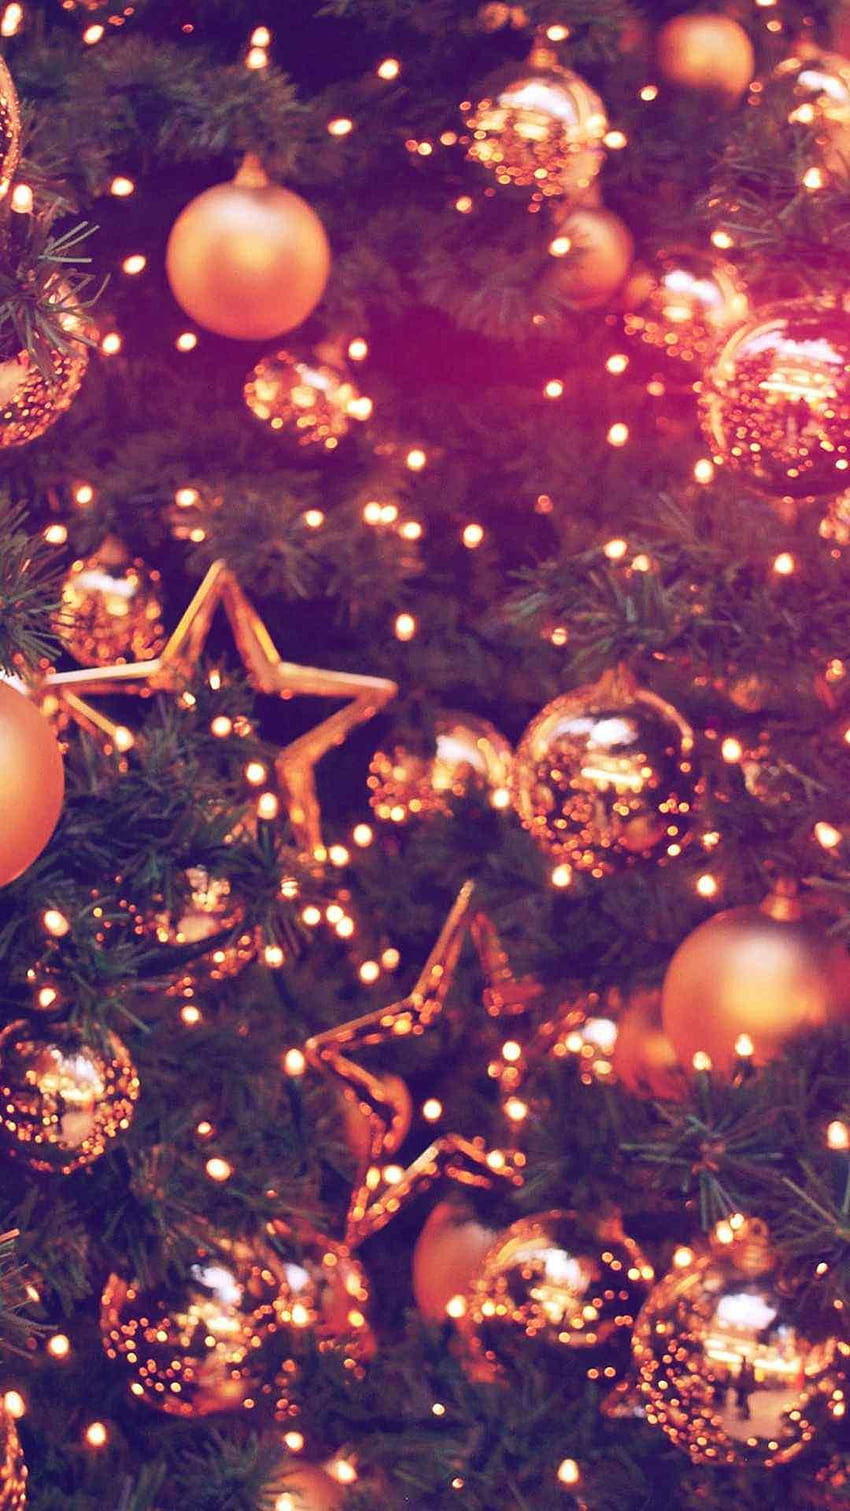 Hãy tôn vinh không khí lễ hội Giáng sinh của bạn với những hình nền Giáng sinh đẹp mắt. Hình nền Giáng sinh đem lại cho bạn cảm giác ấm cúng và niềm vui khi nhìn vào chiếc điện thoại. Bạn sẽ tìm thấy được những hình ảnh Giáng sinh phù hợp với phong cách của mình, giúp cho ngôi nhà của bạn trở nên thật đặc biệt.